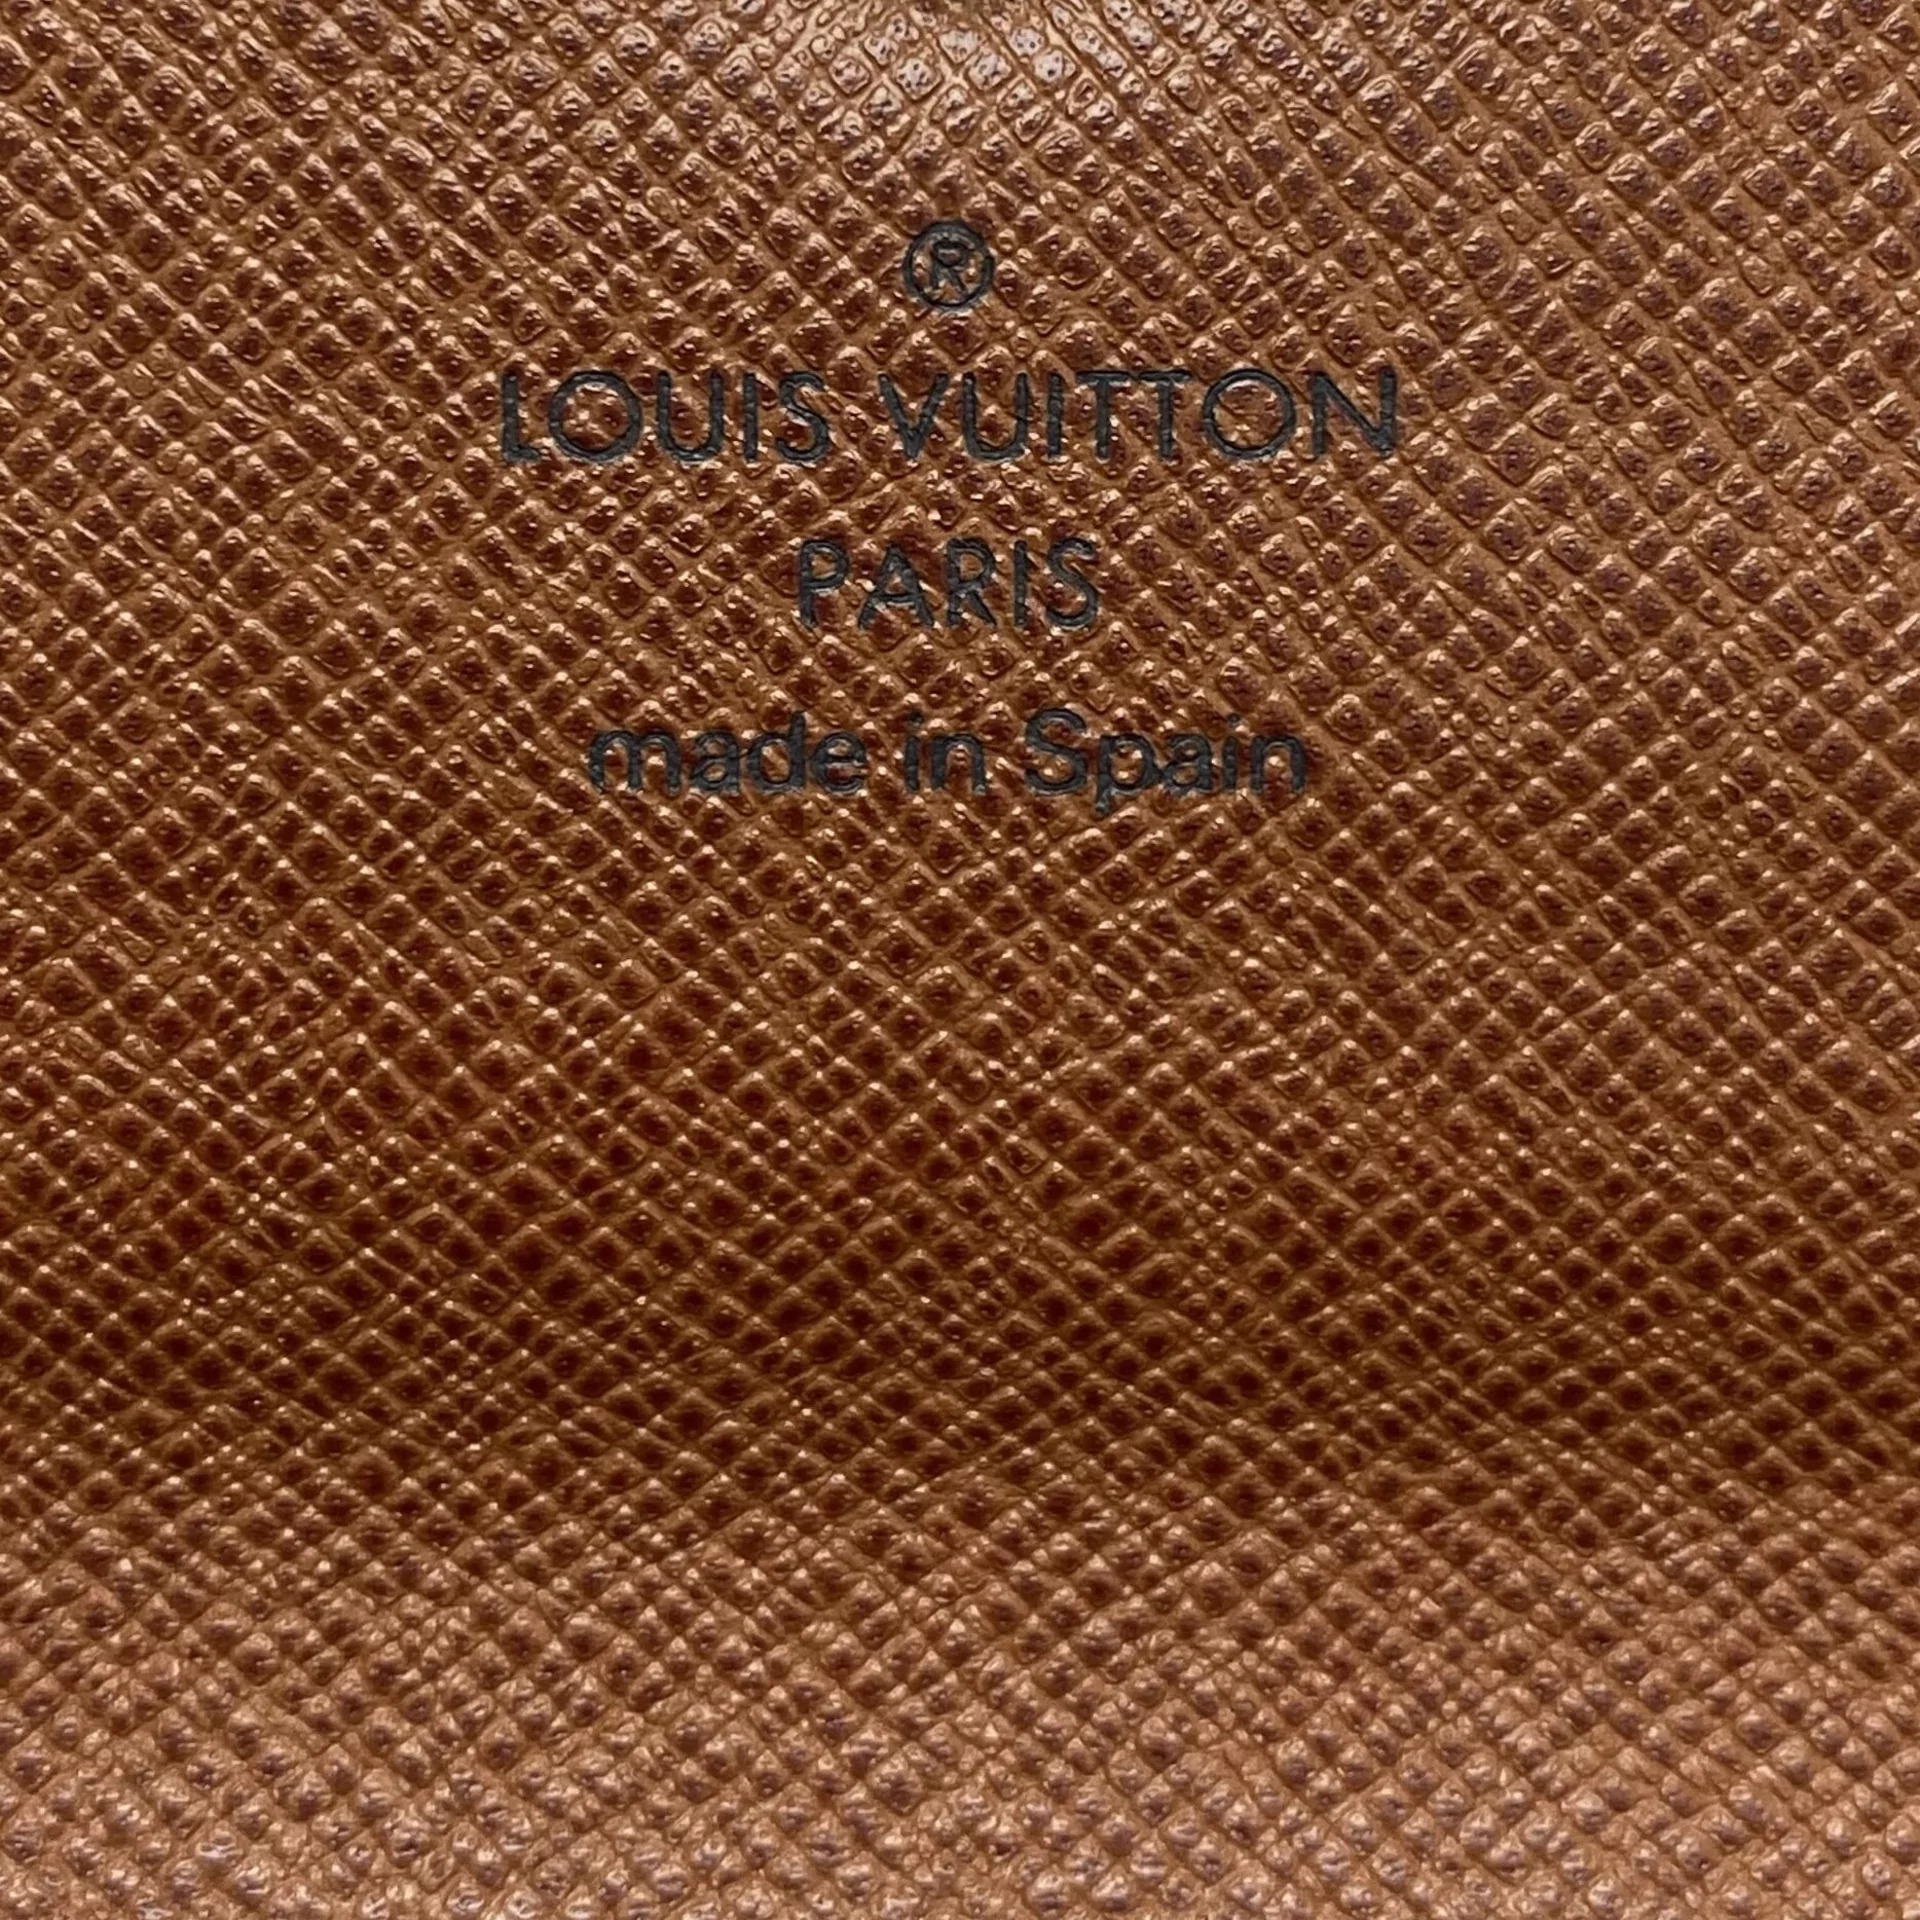 Carteira Louis Vuitton Sarah Monogram